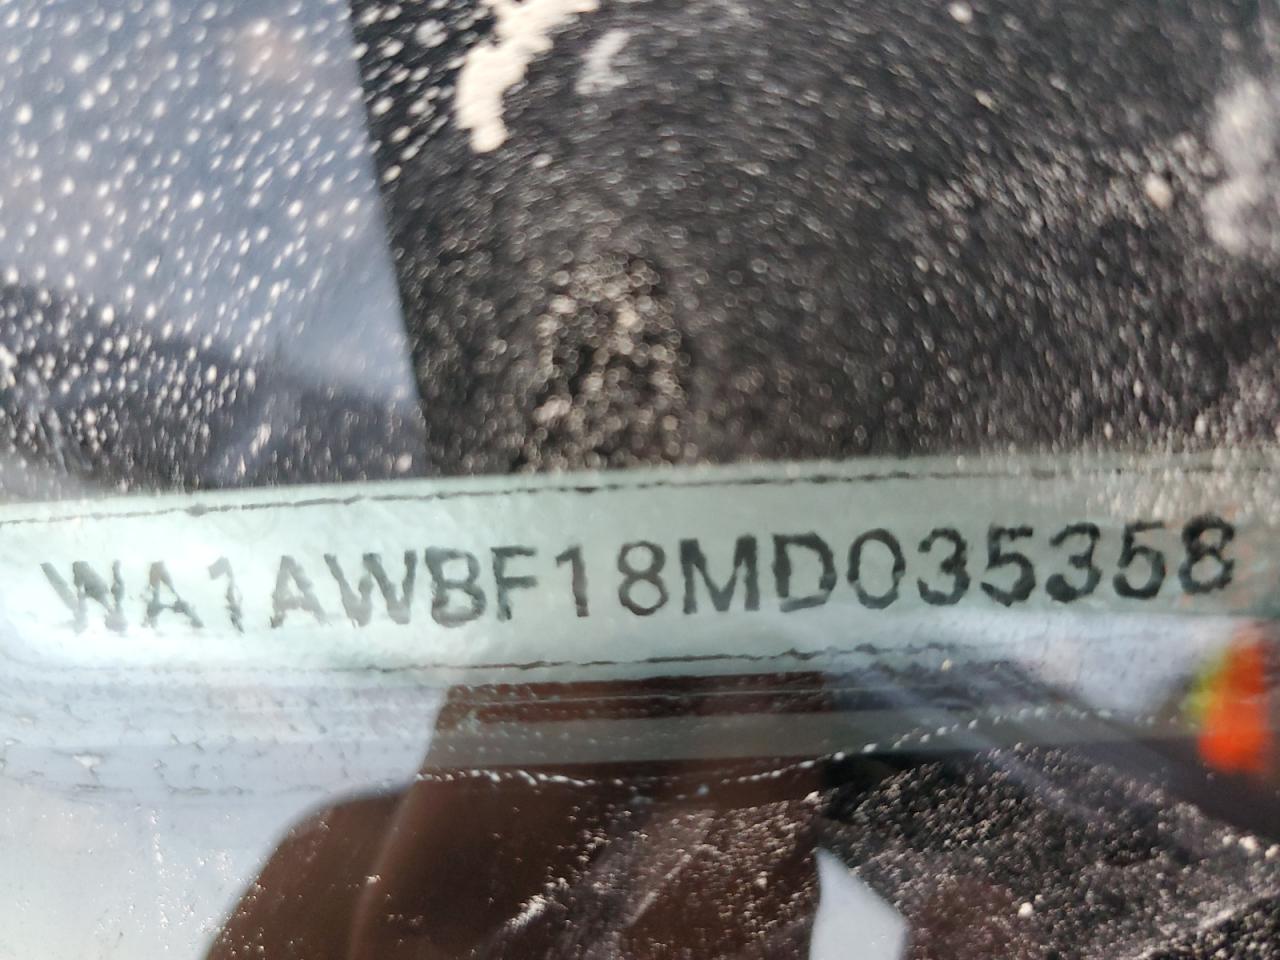 WA1AWBF18MD035358-10